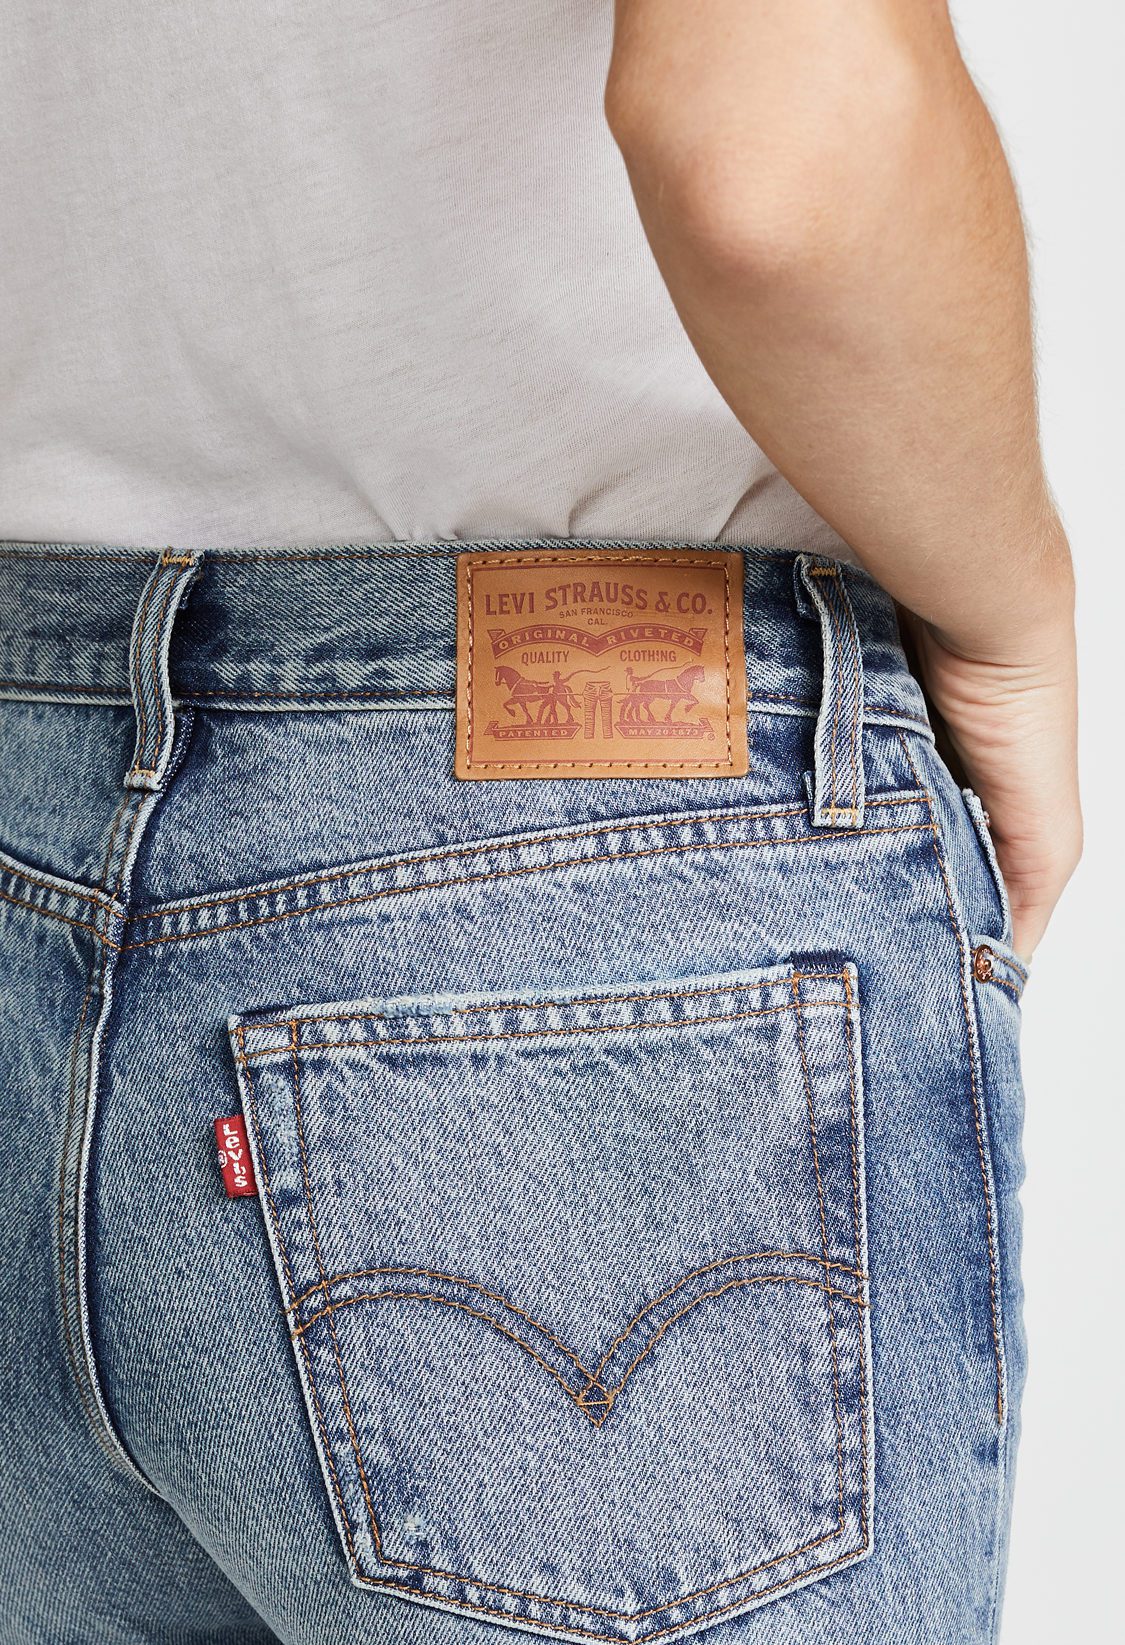 betalingsmiddel sekstant Legende The Most Flattering Jeans (& vintage sizing tips) - Hither & Thither